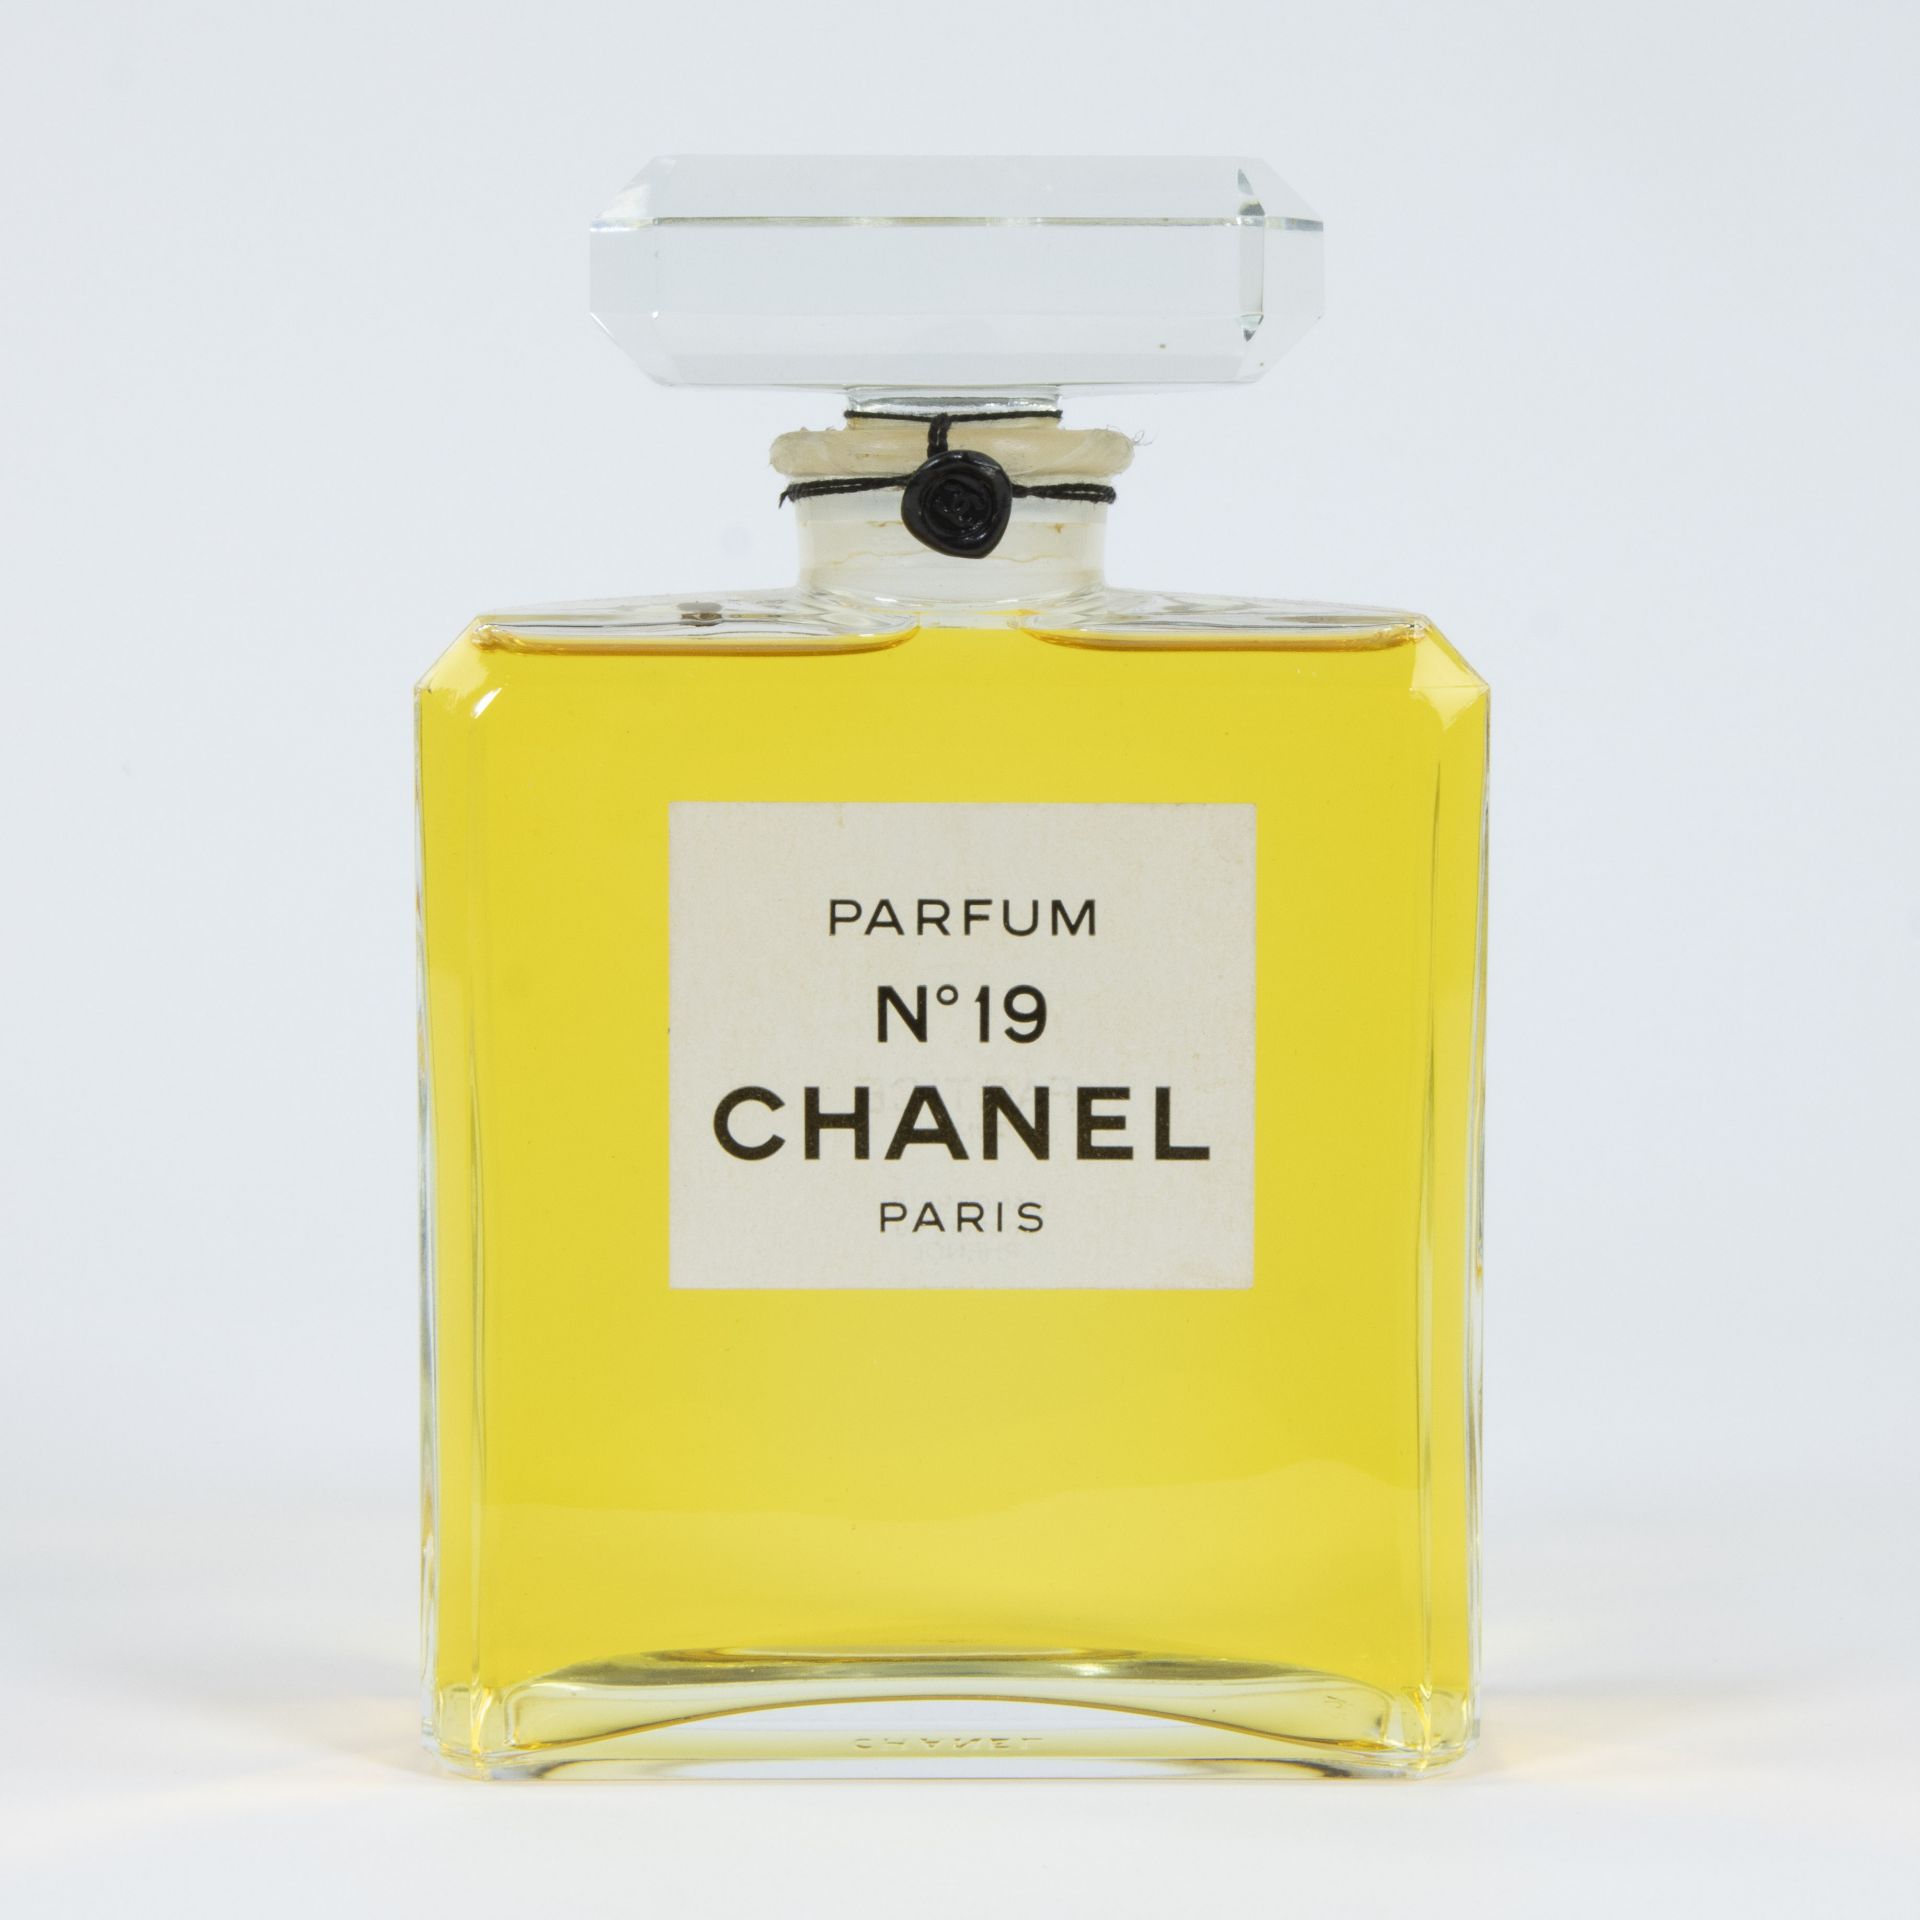 Factice perfume bottle CHANEL n° 19 Paris